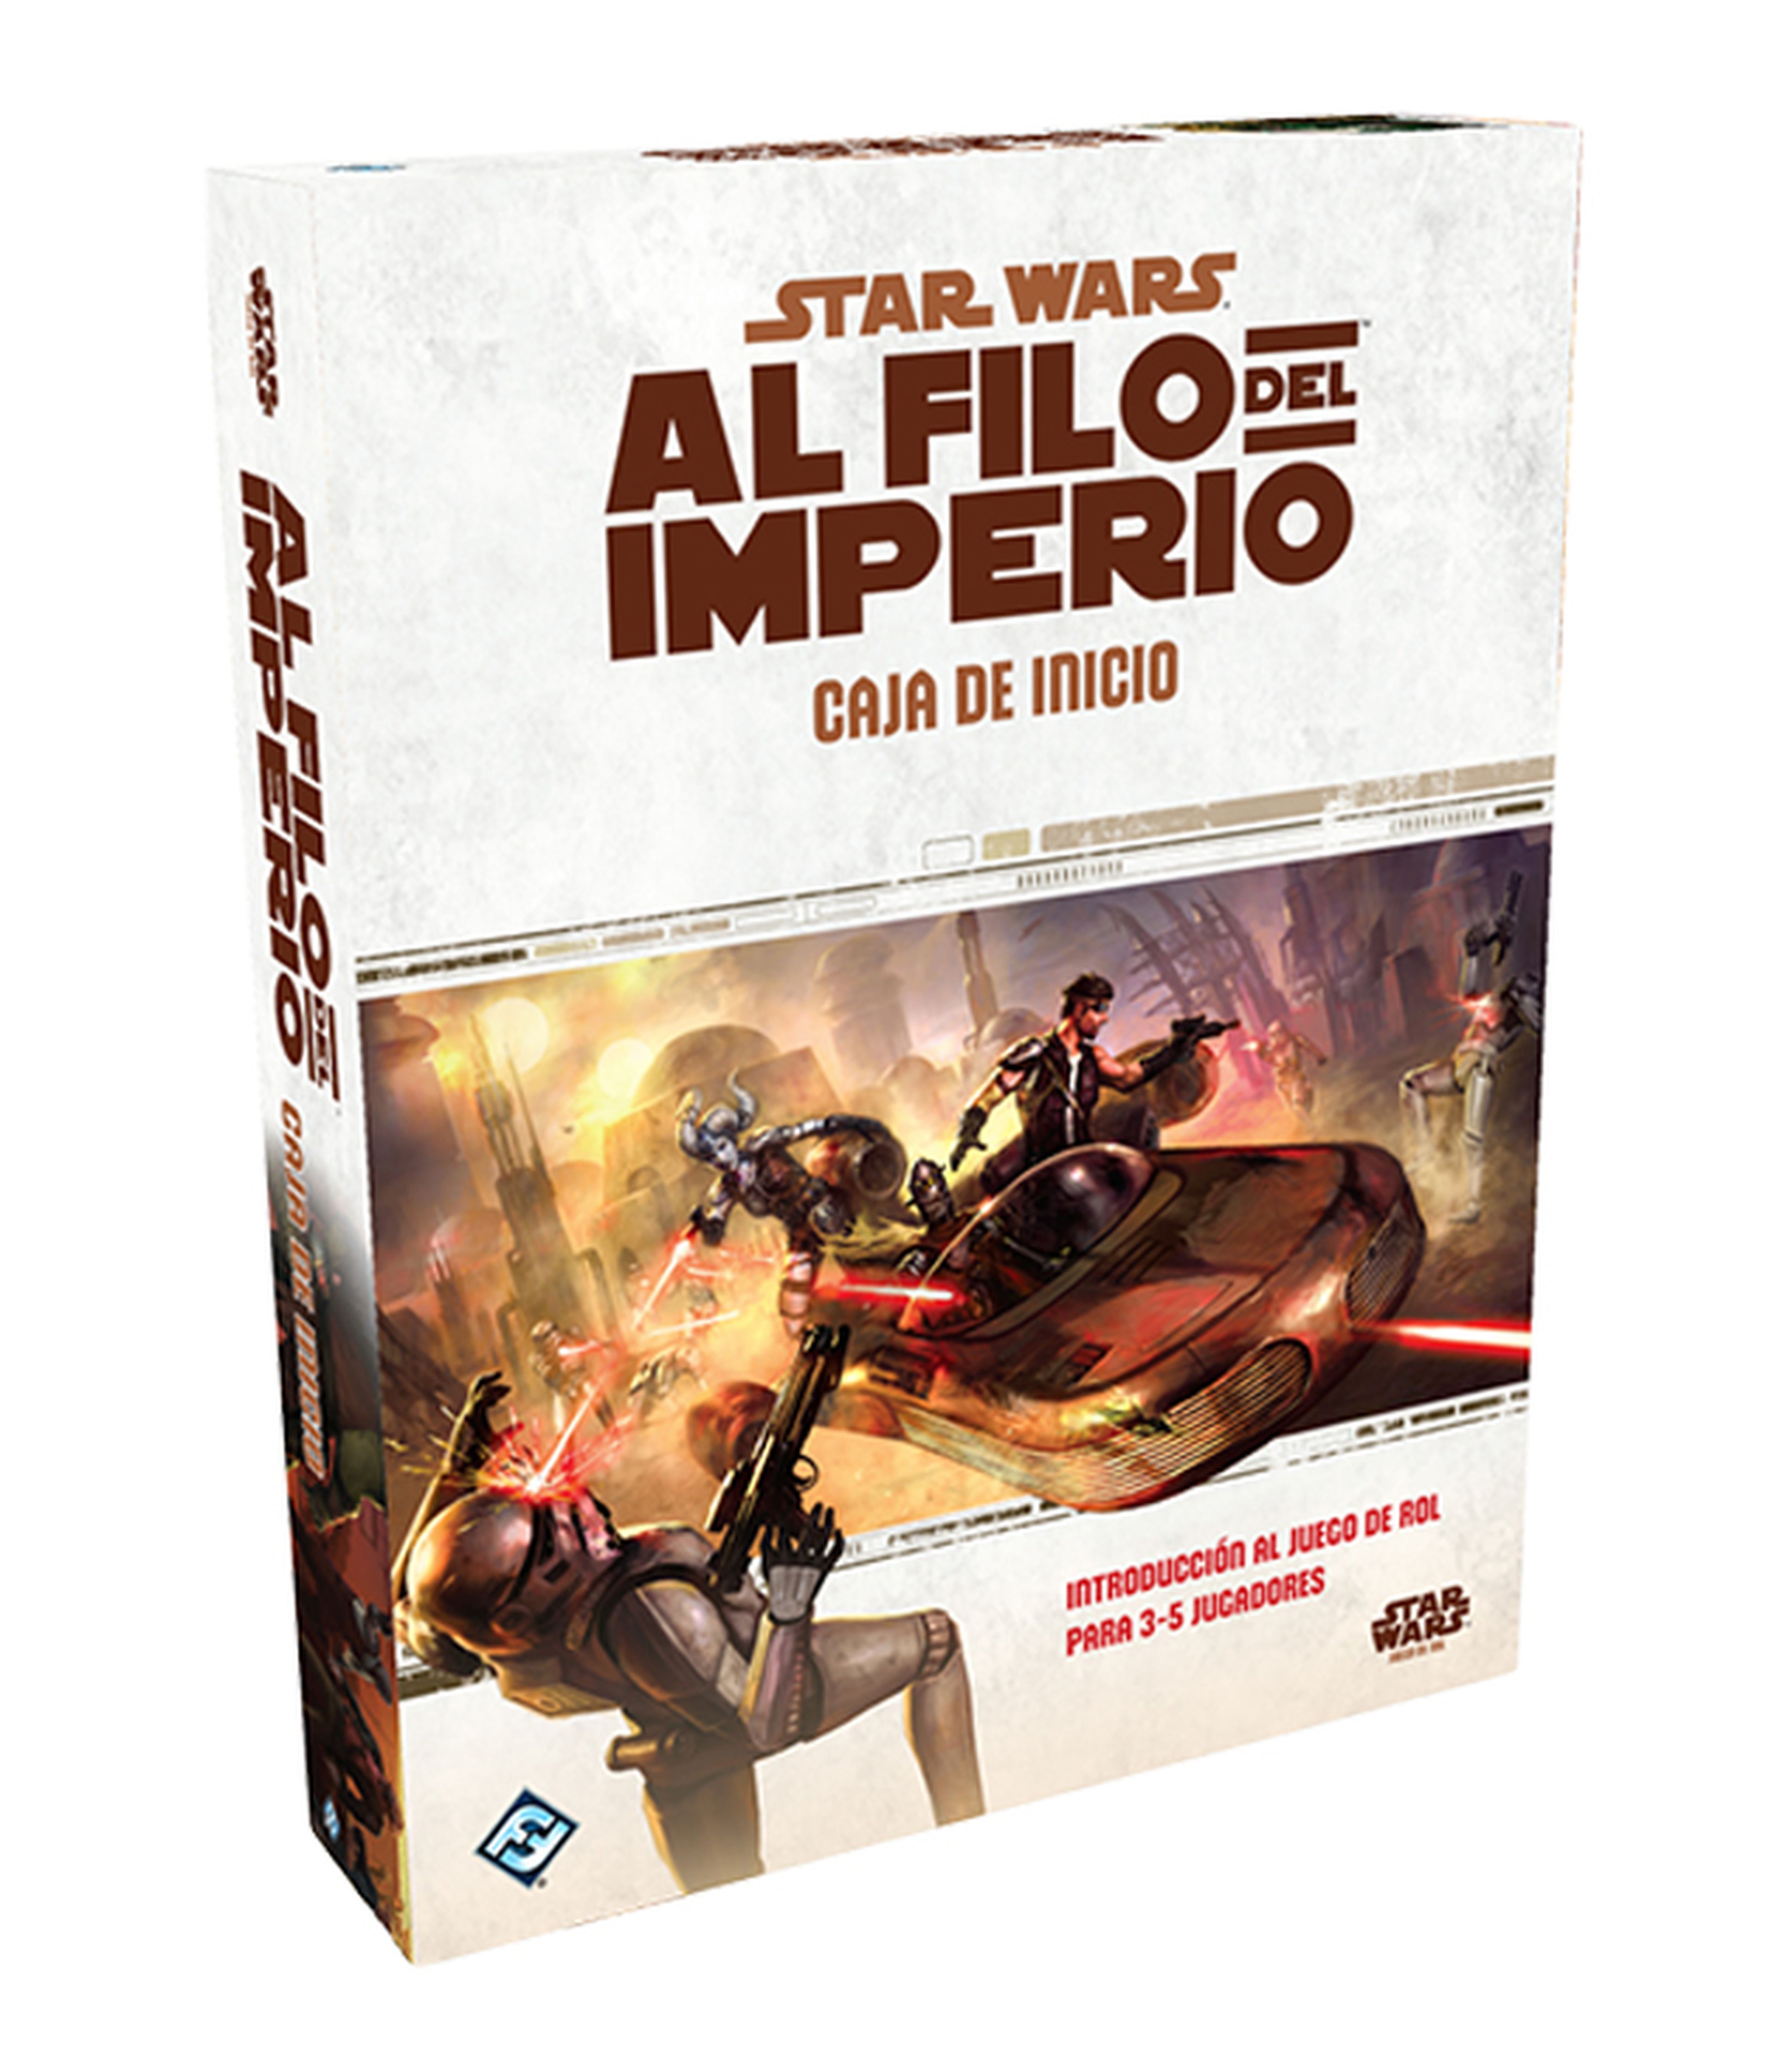 Hoy sale Star Wars: Al Filo del Imperio, el nuevo juego de rol